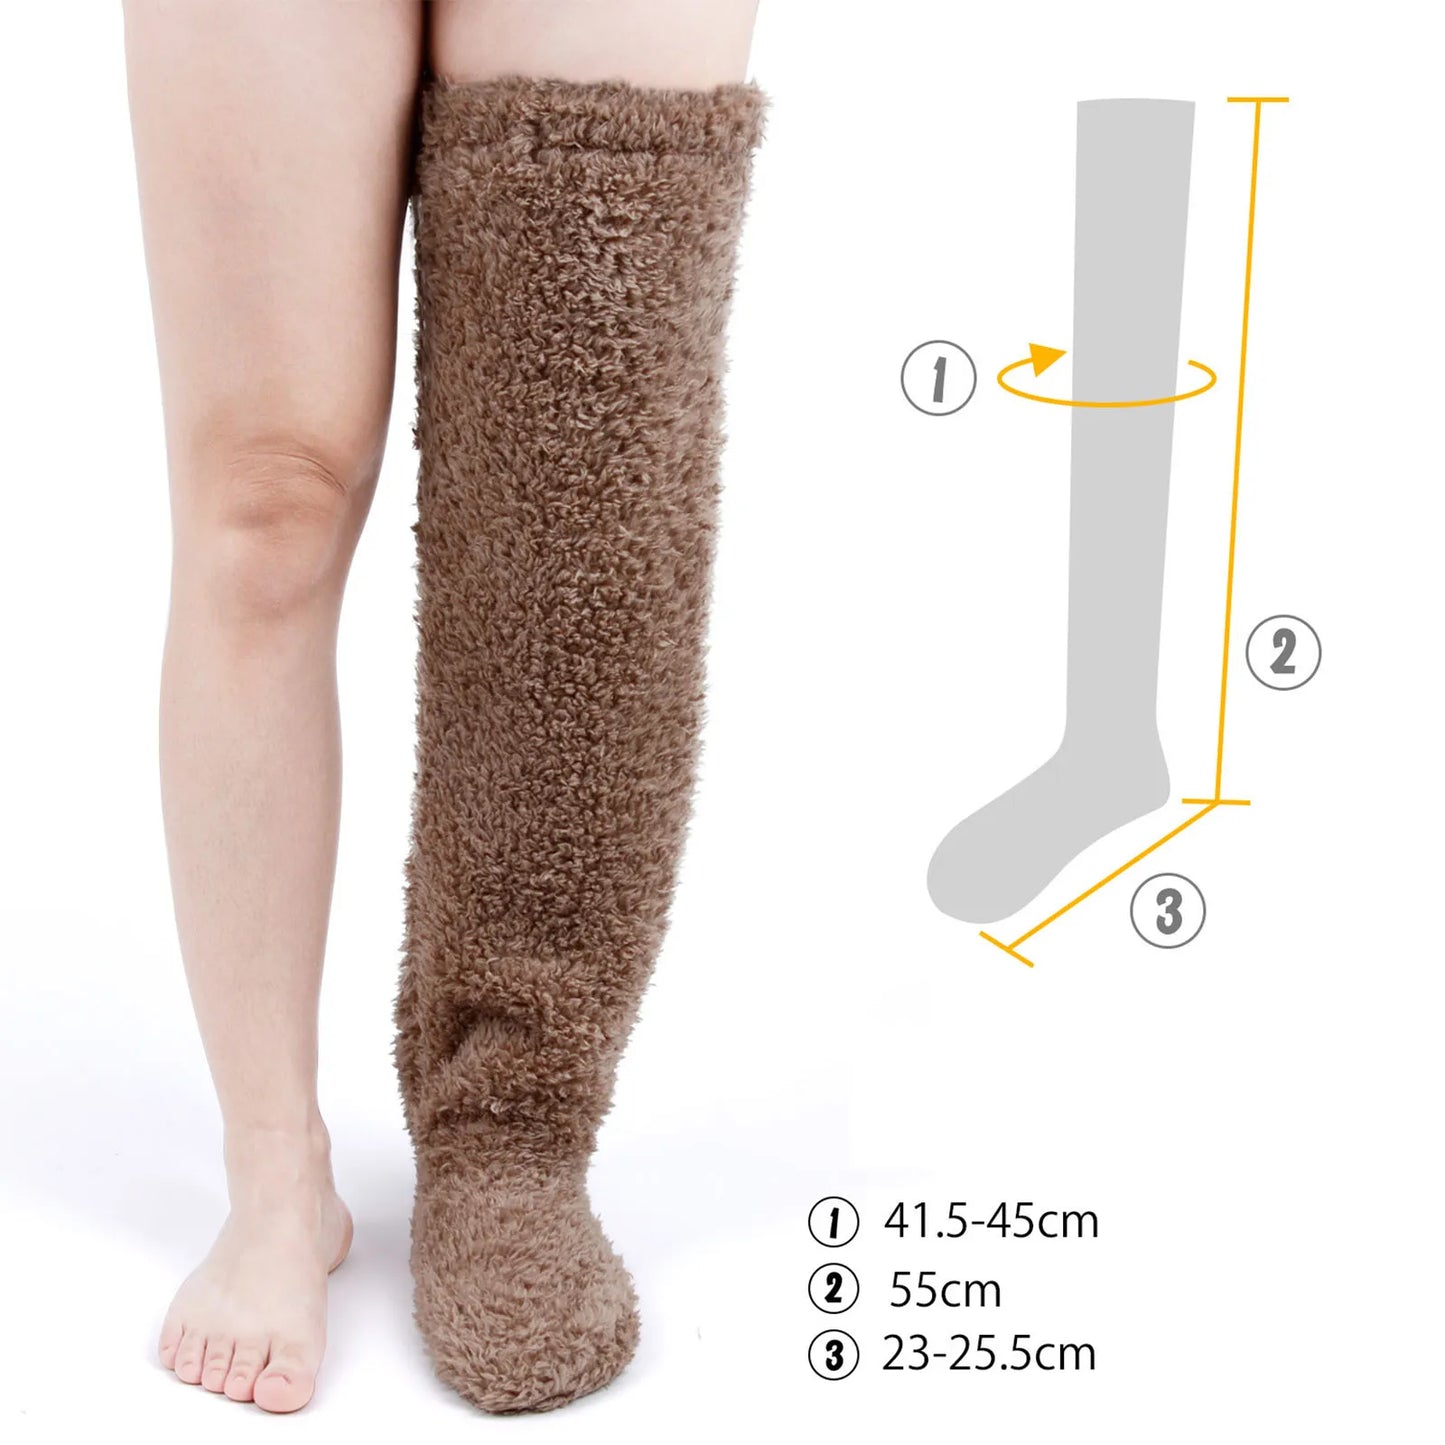 CozyThigh SnuggleWarm Socks™